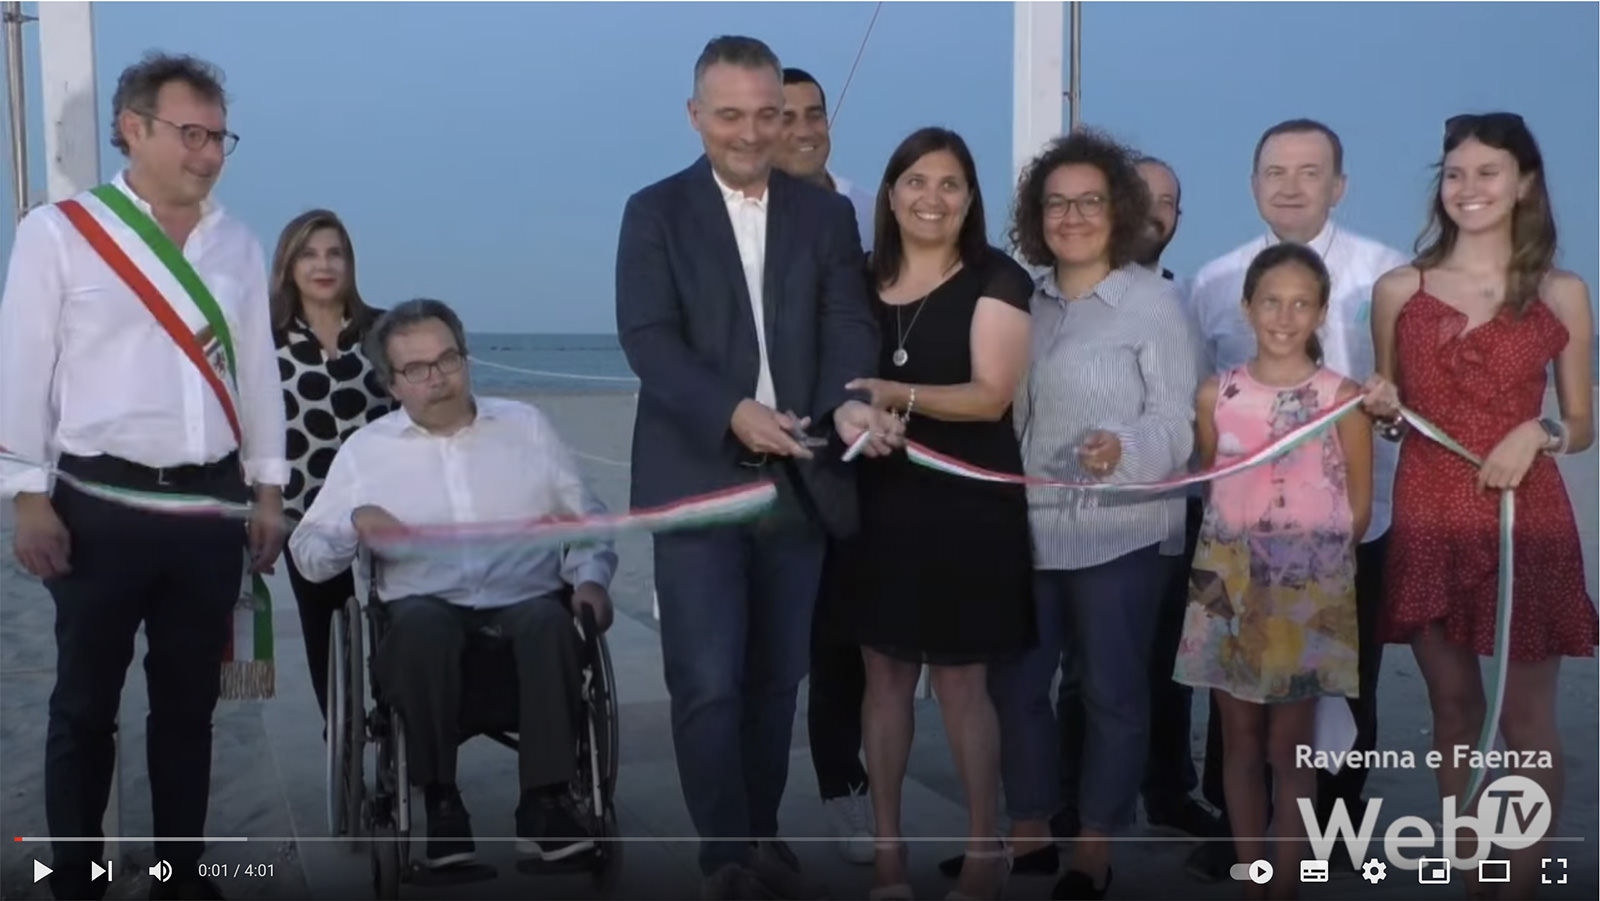 Inaugurata la spiaggia per le persone con disabilità:”Lavoriamo per rendere permanente l’esperienza” [RavennaWebTv]